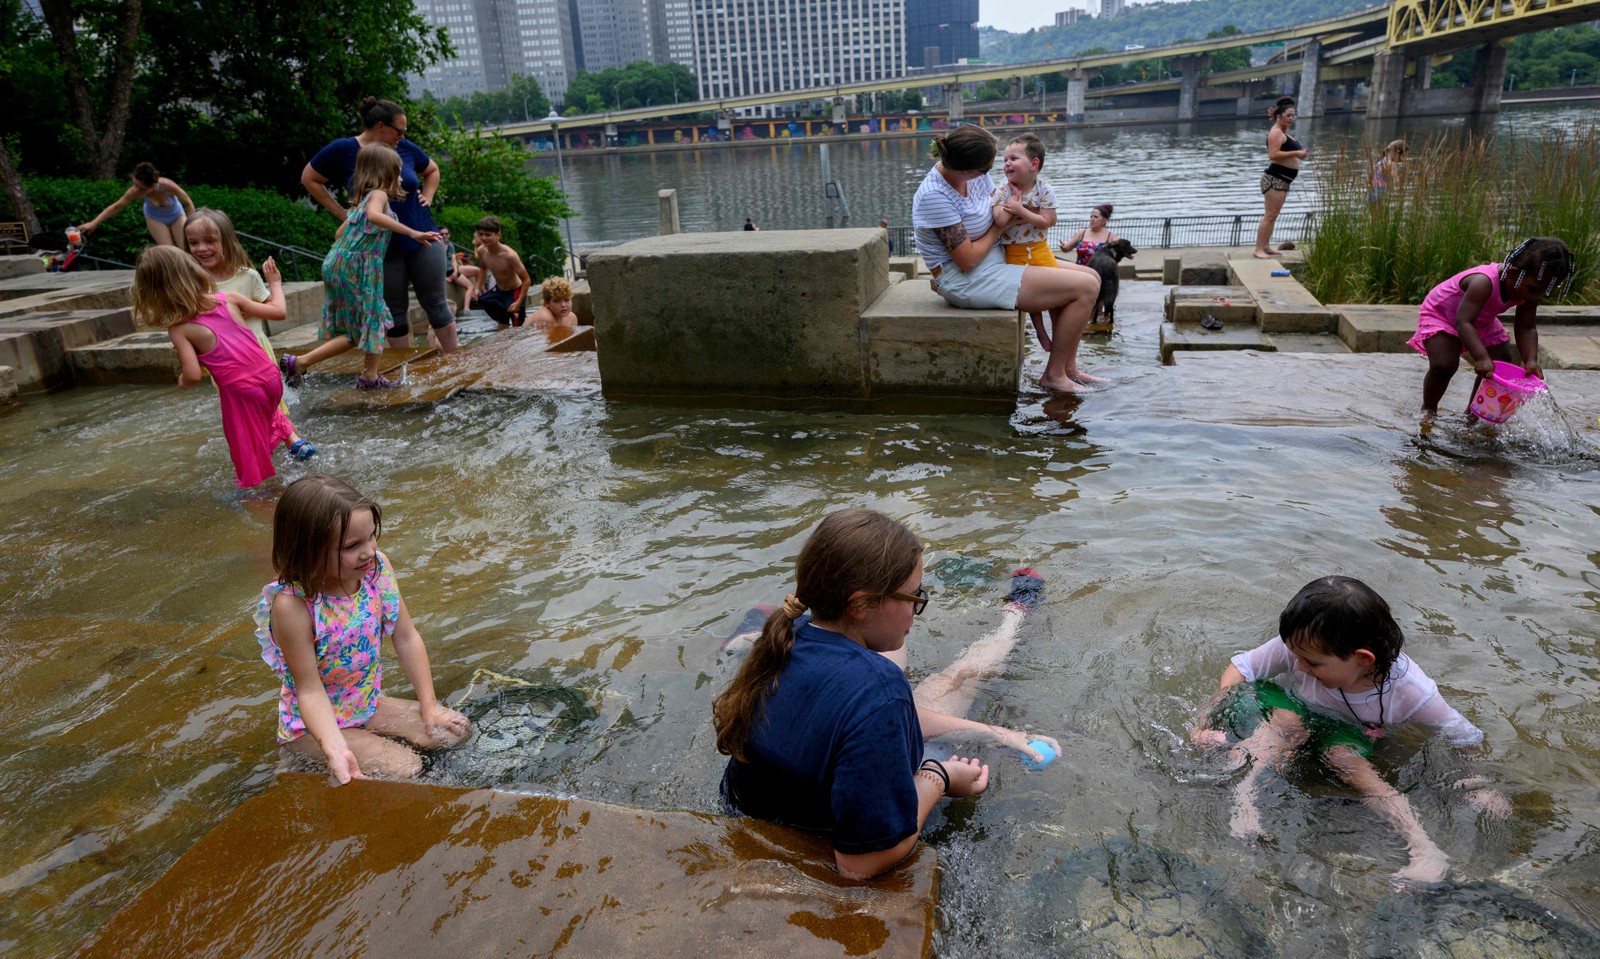 Pessoas lotam os Water Steps no Riverfront Park ao longo do rio Allegheny  em Pittsburgh, Pensilvânia. O Serviço Meteorológico Nacional emitiu um alerta de calor excessivo para grande parte do Centro-Oeste dos Estados Unidos. — Foto: Jeff Swensen/Getty Images/AFP